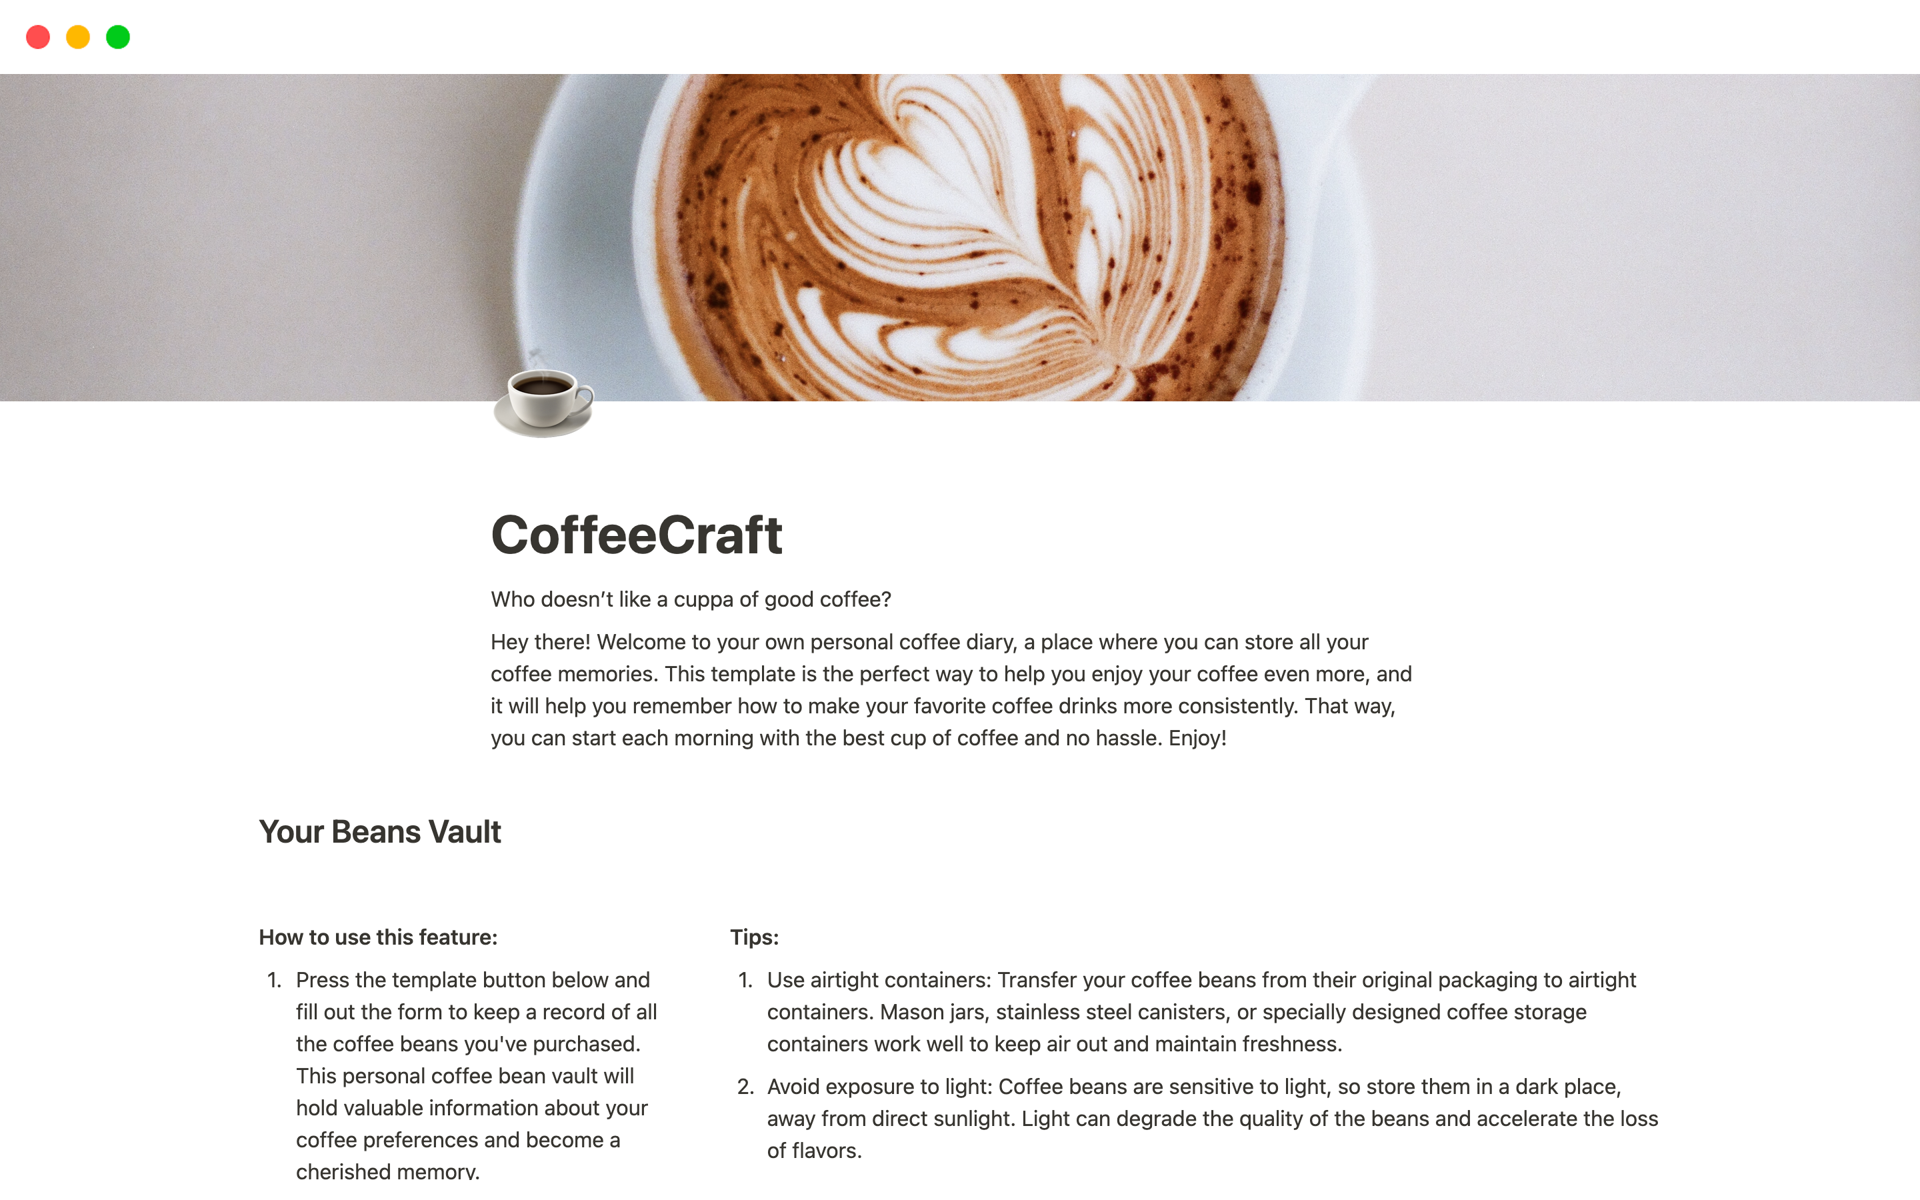 Uma prévia do modelo para CoffeeCraft